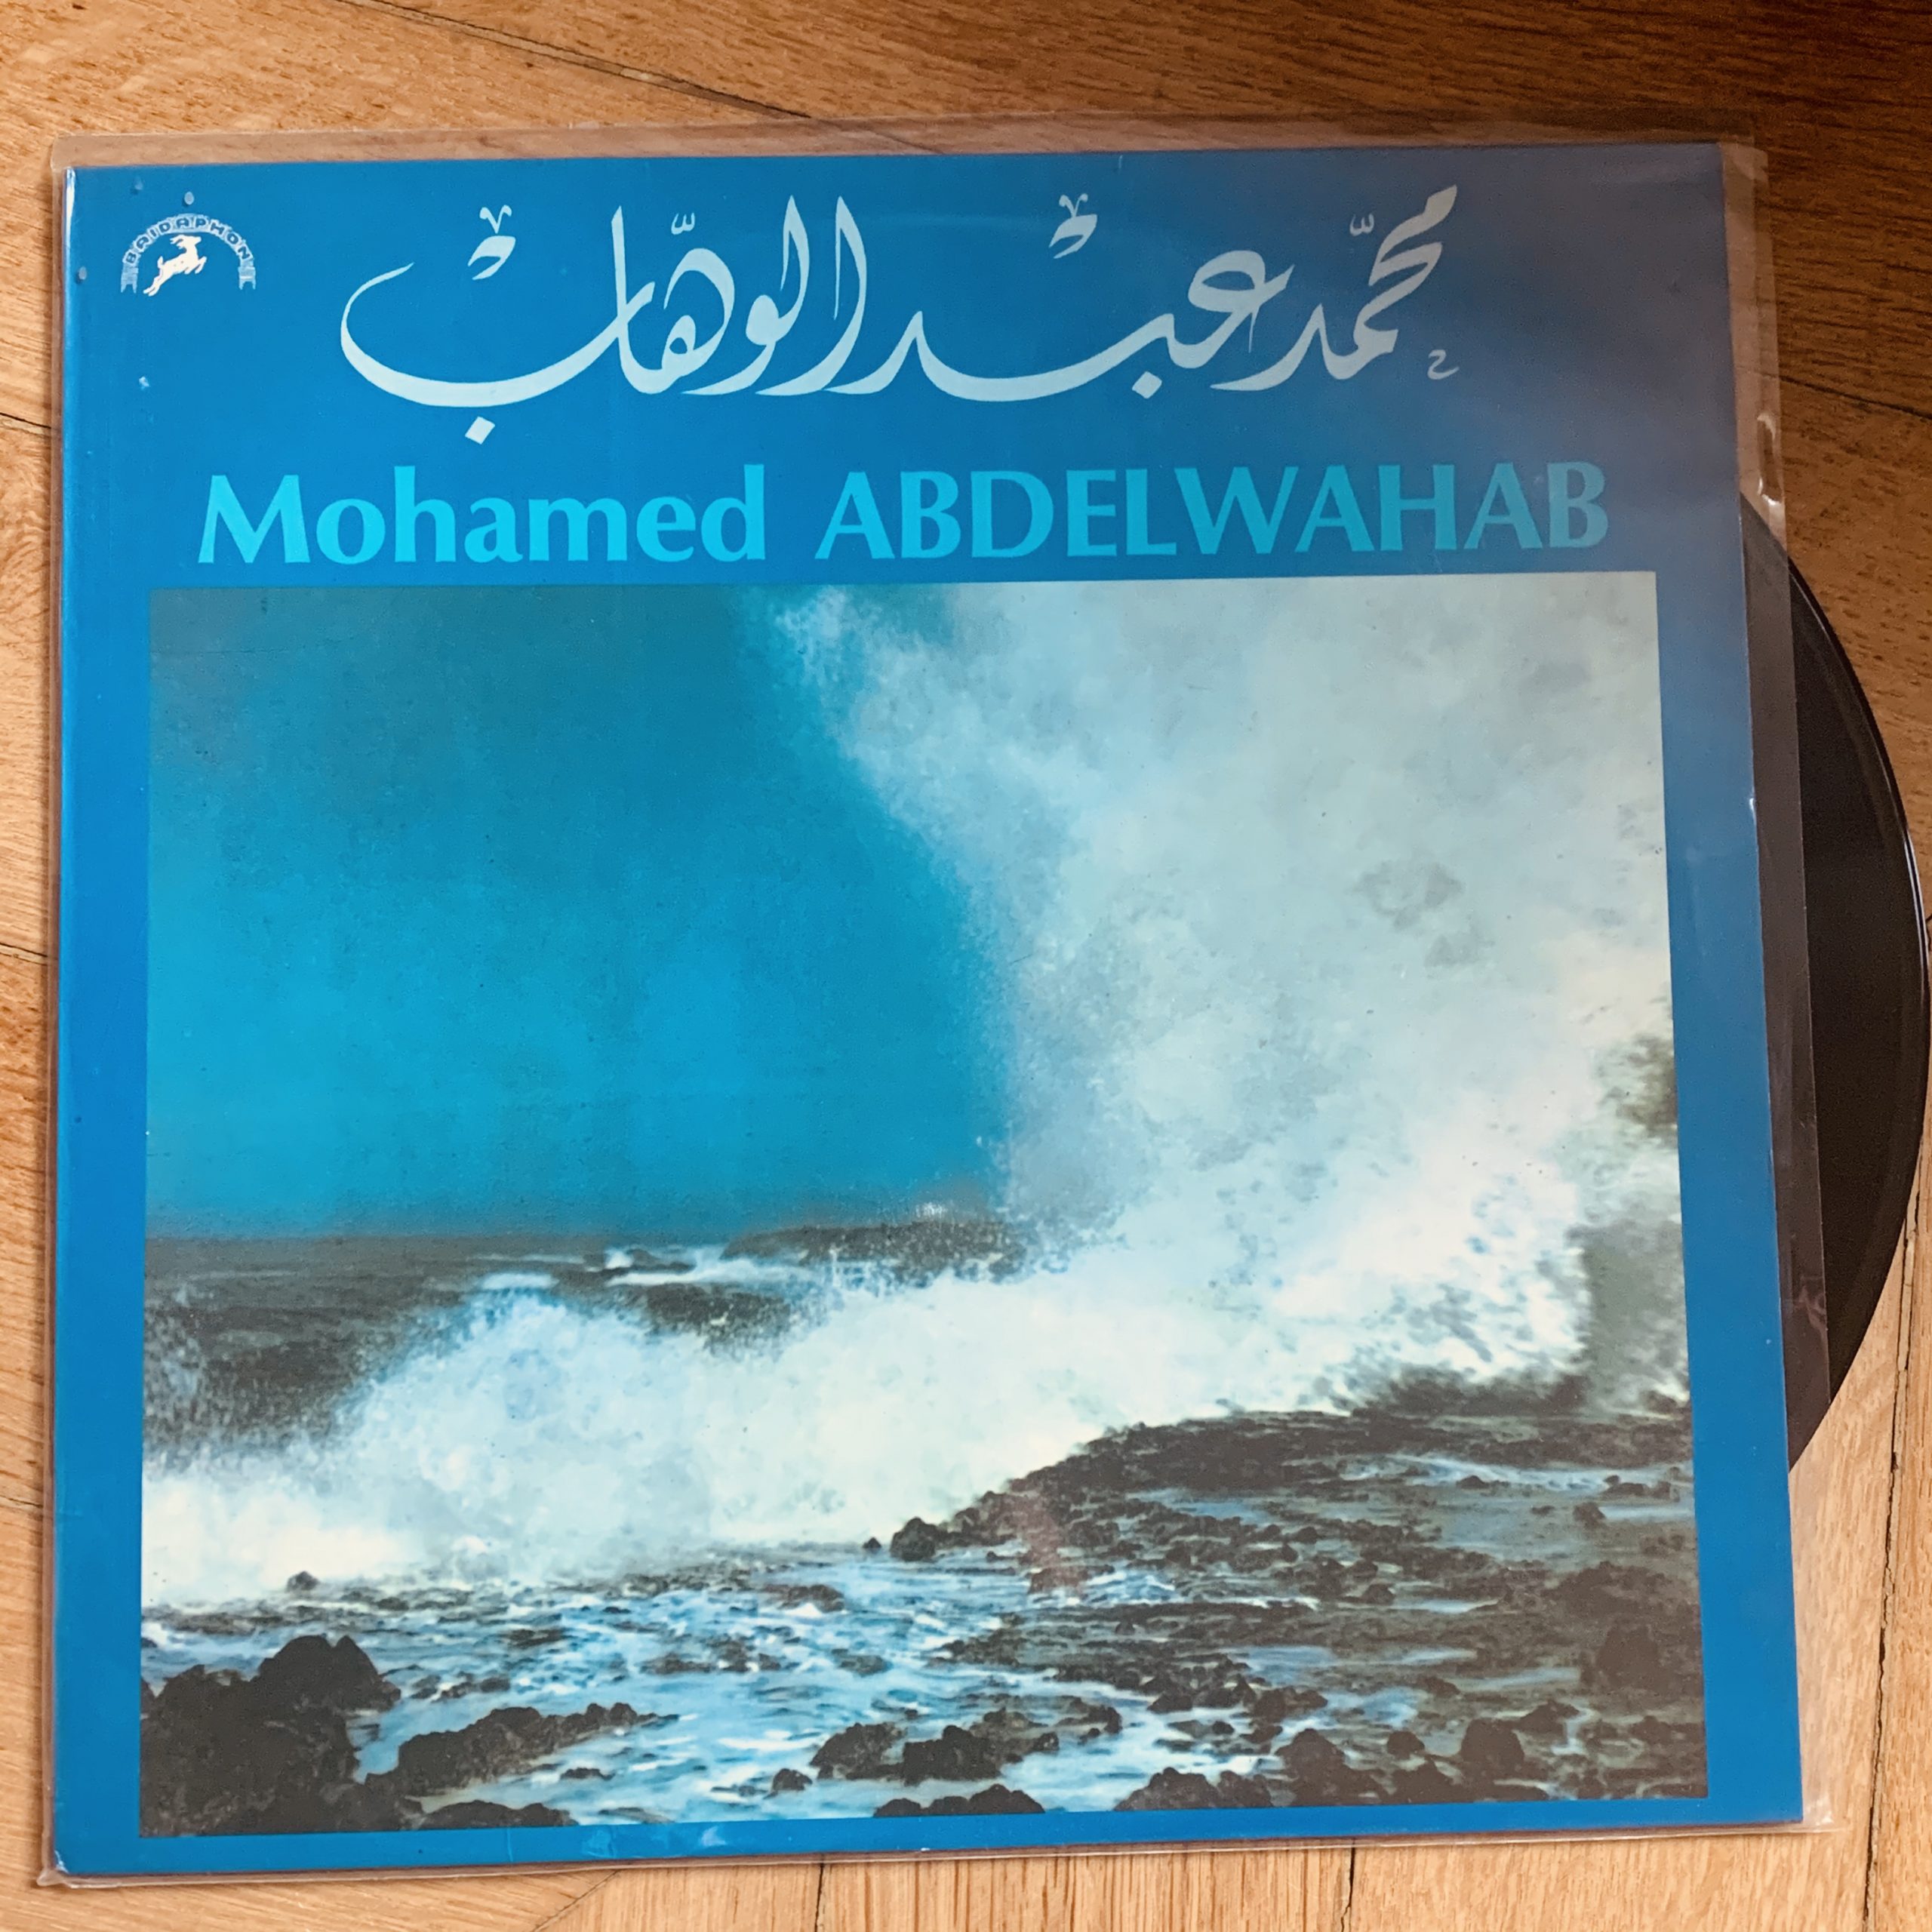 Le disque de Mohamed Abdelwahab